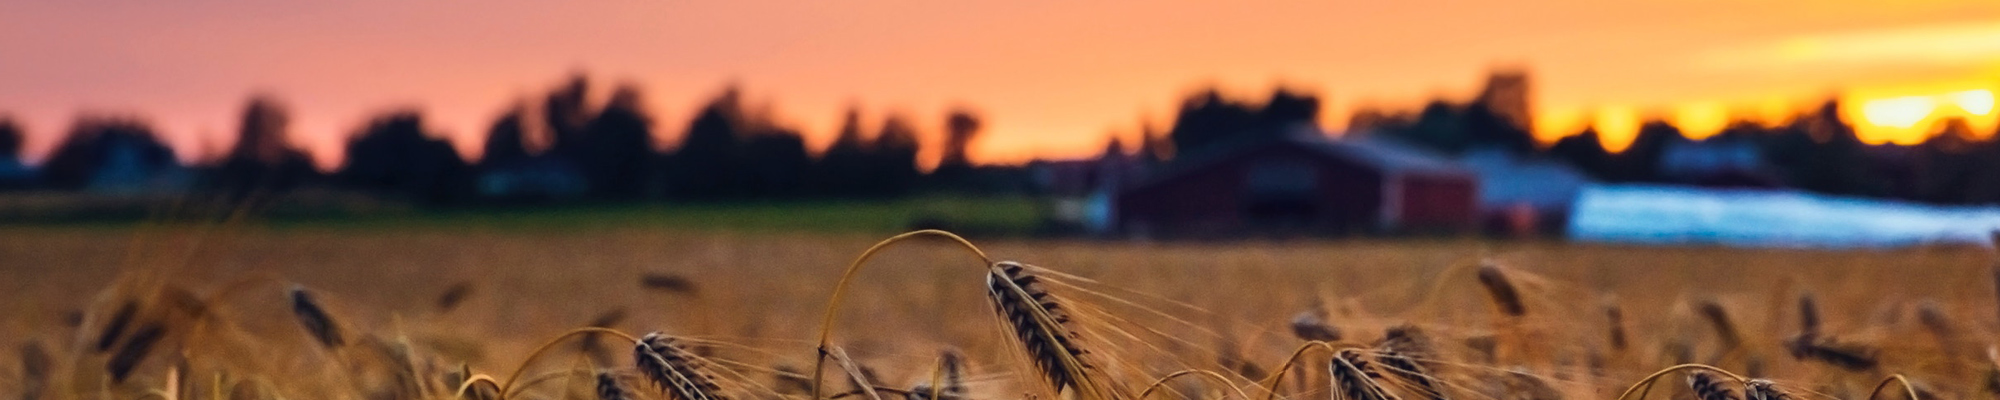 Wheat field in evening